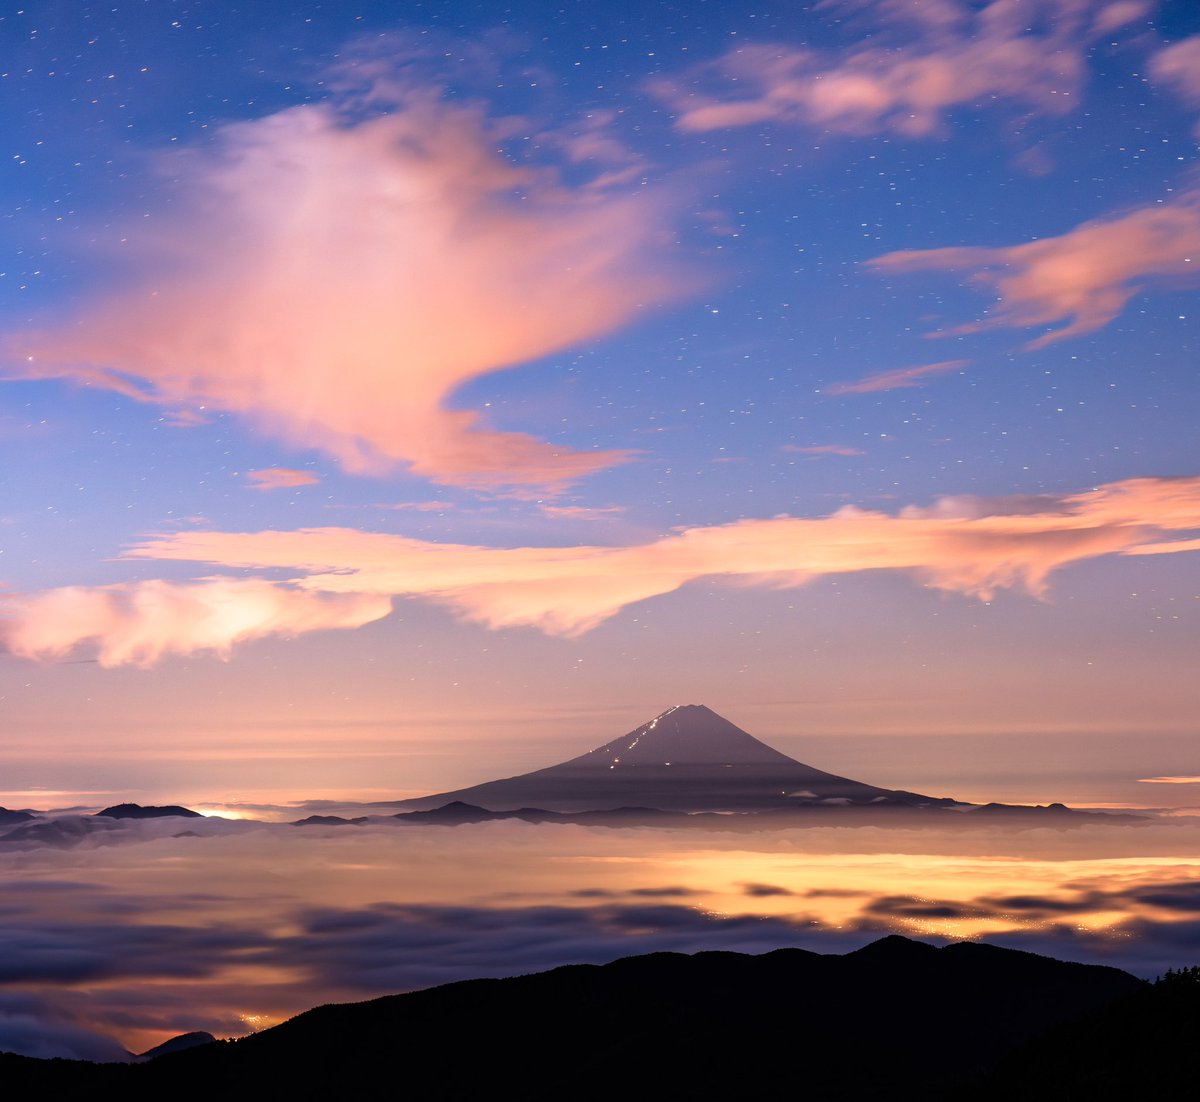 雲海と富士山🗻☁️ #富士山 #雲海 #夜景 #奇跡の光景